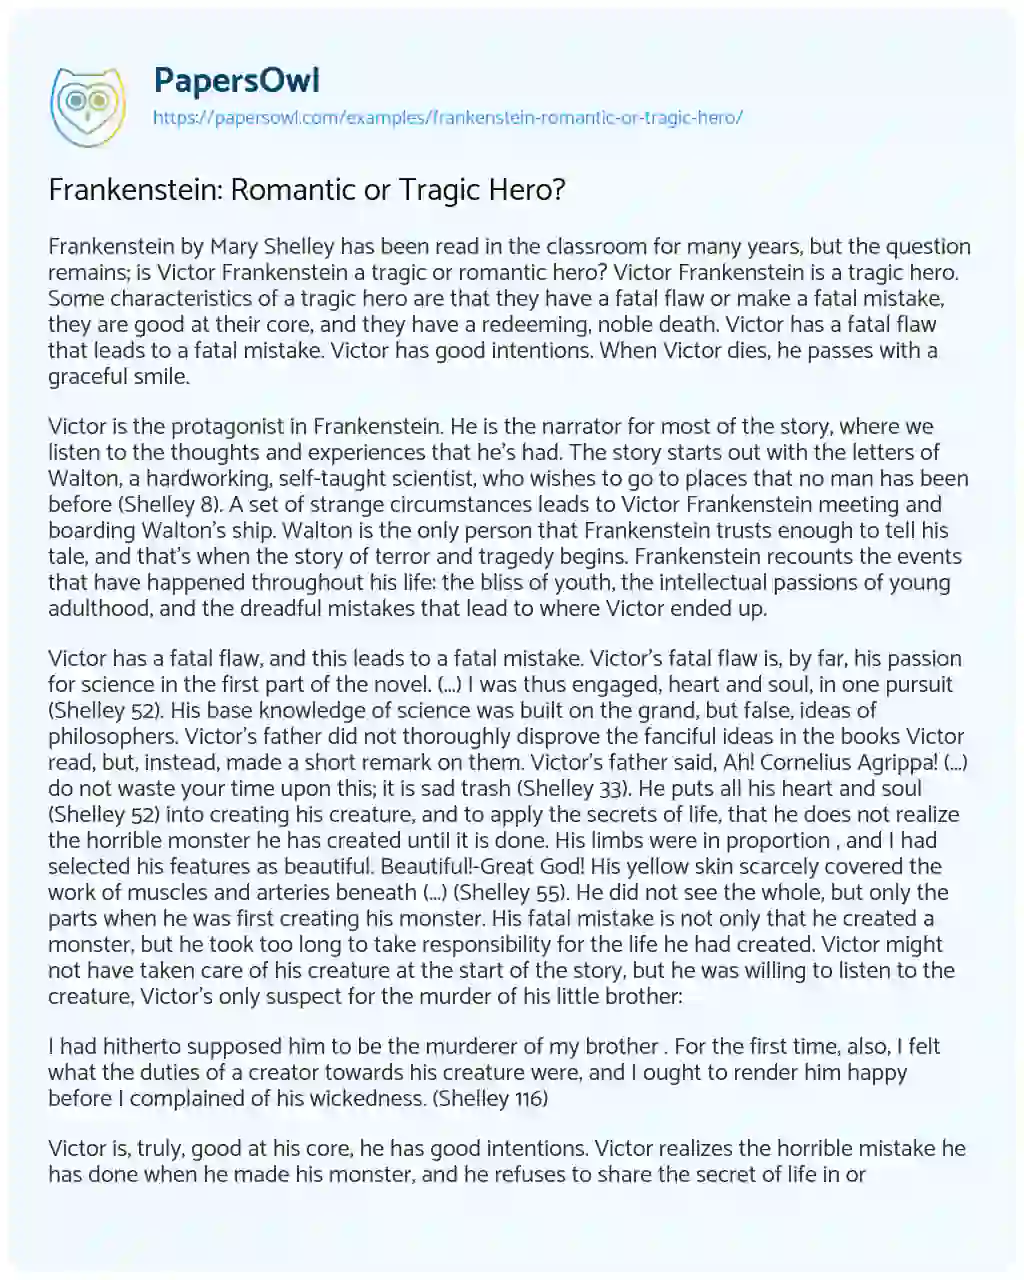 Frankenstein: Romantic or Tragic Hero? essay